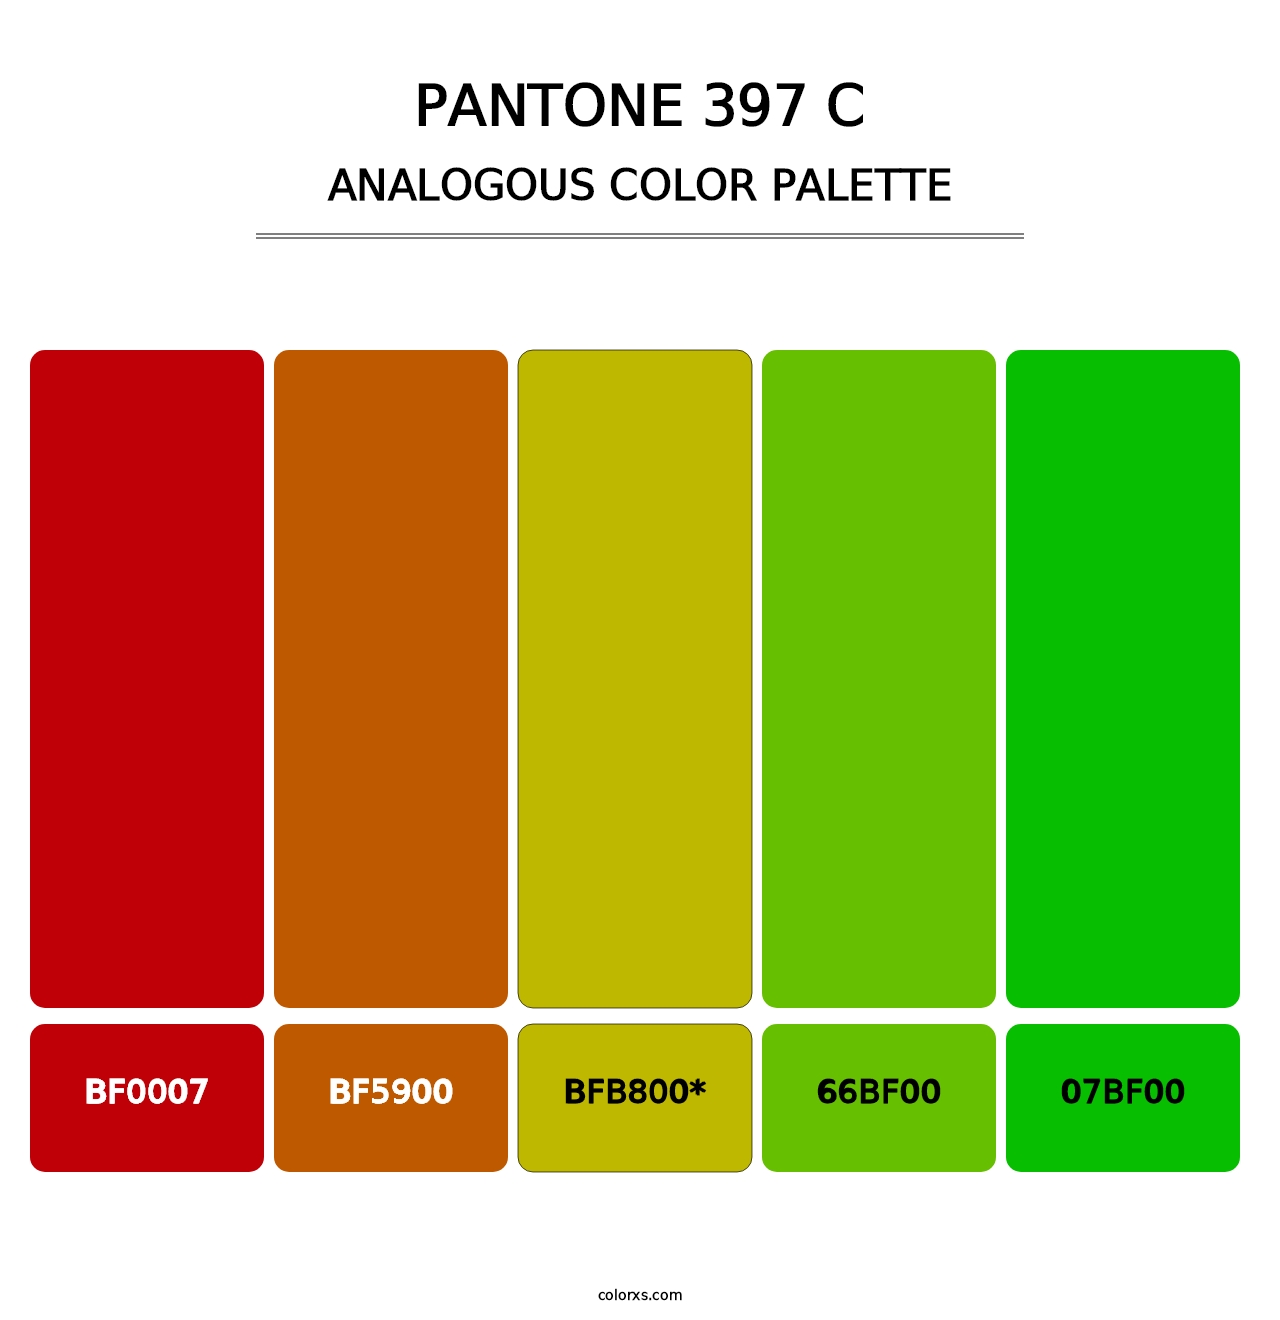 PANTONE 397 C - Analogous Color Palette